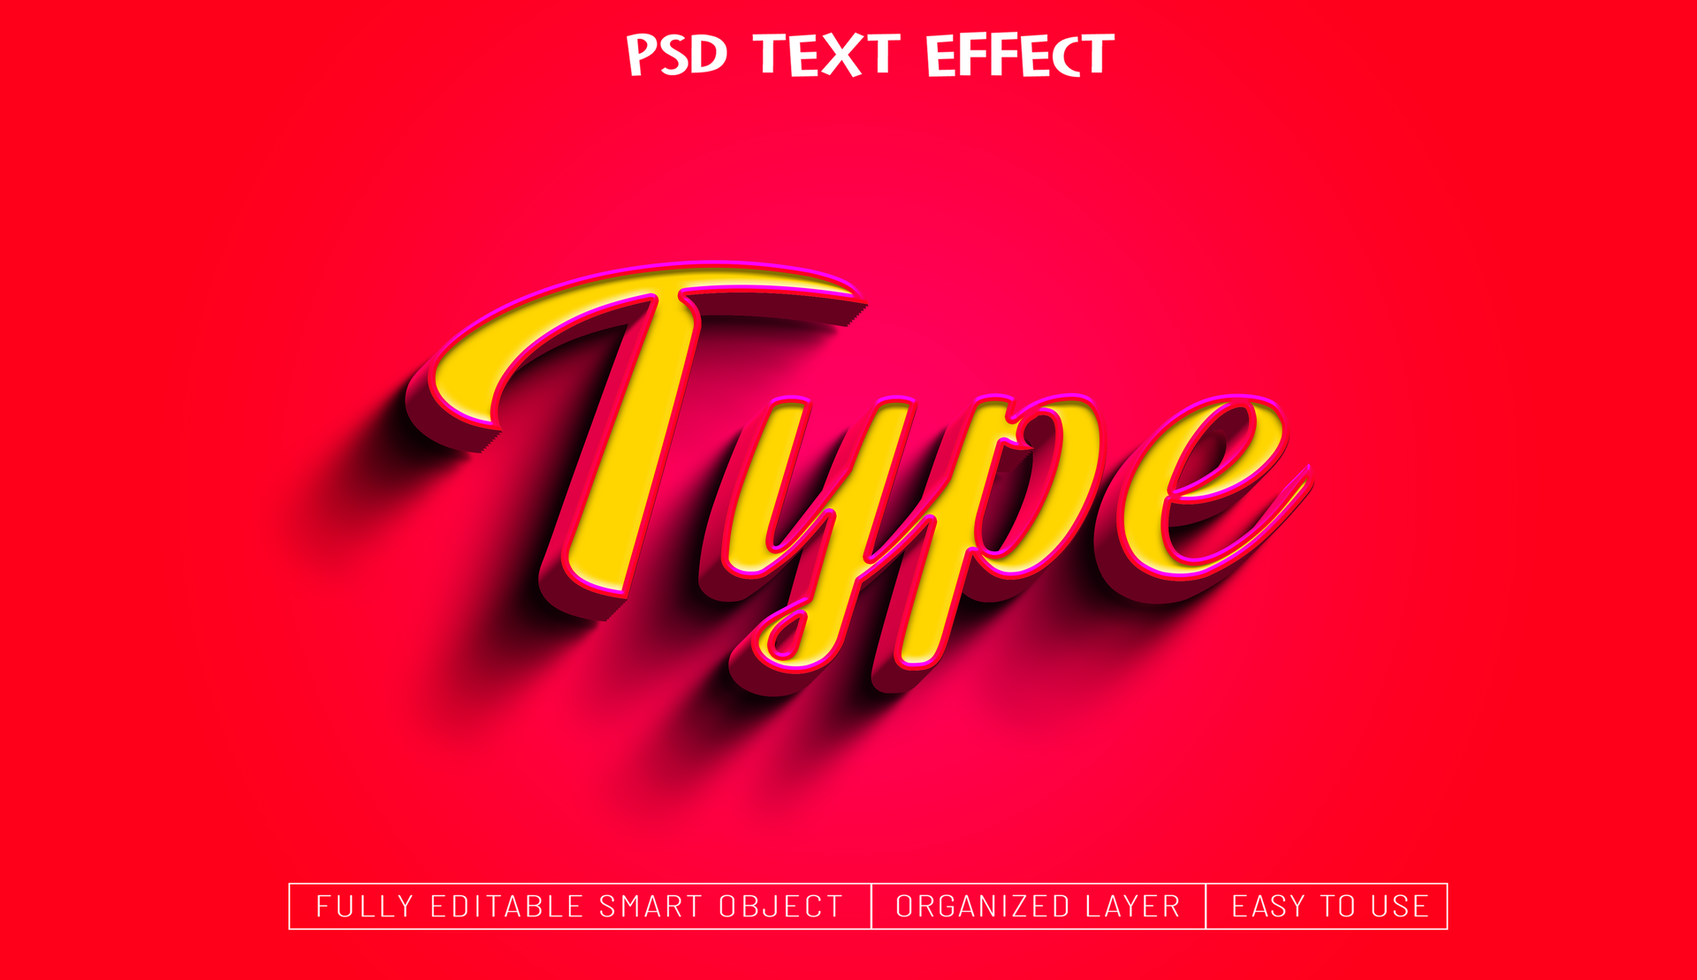 Psd text effect design .